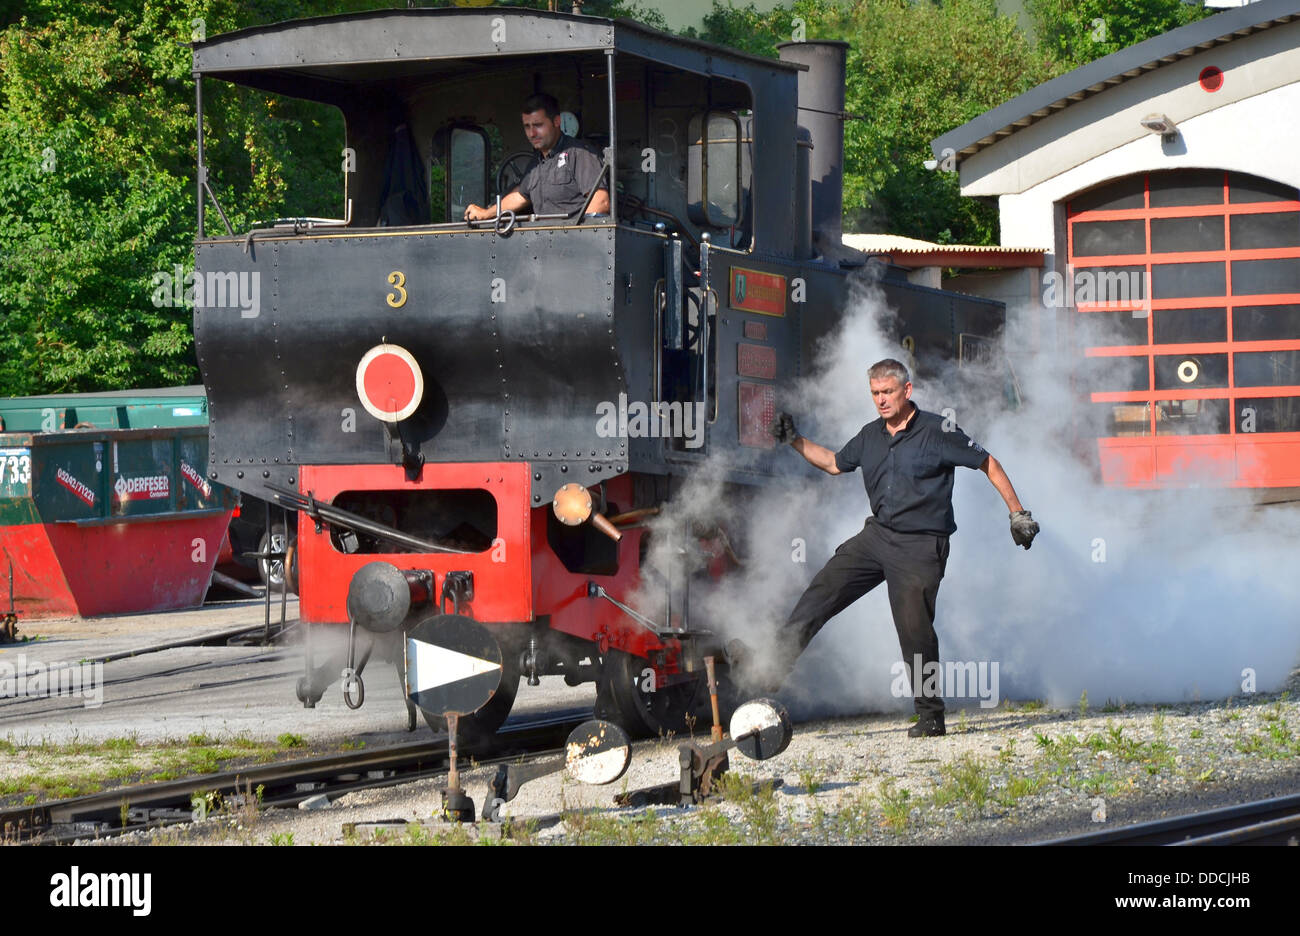 Achensee, Achensee narrow gauge steam cog railway, Jenbach station,  World’s oldest steam cog locomotives. Stock Photo